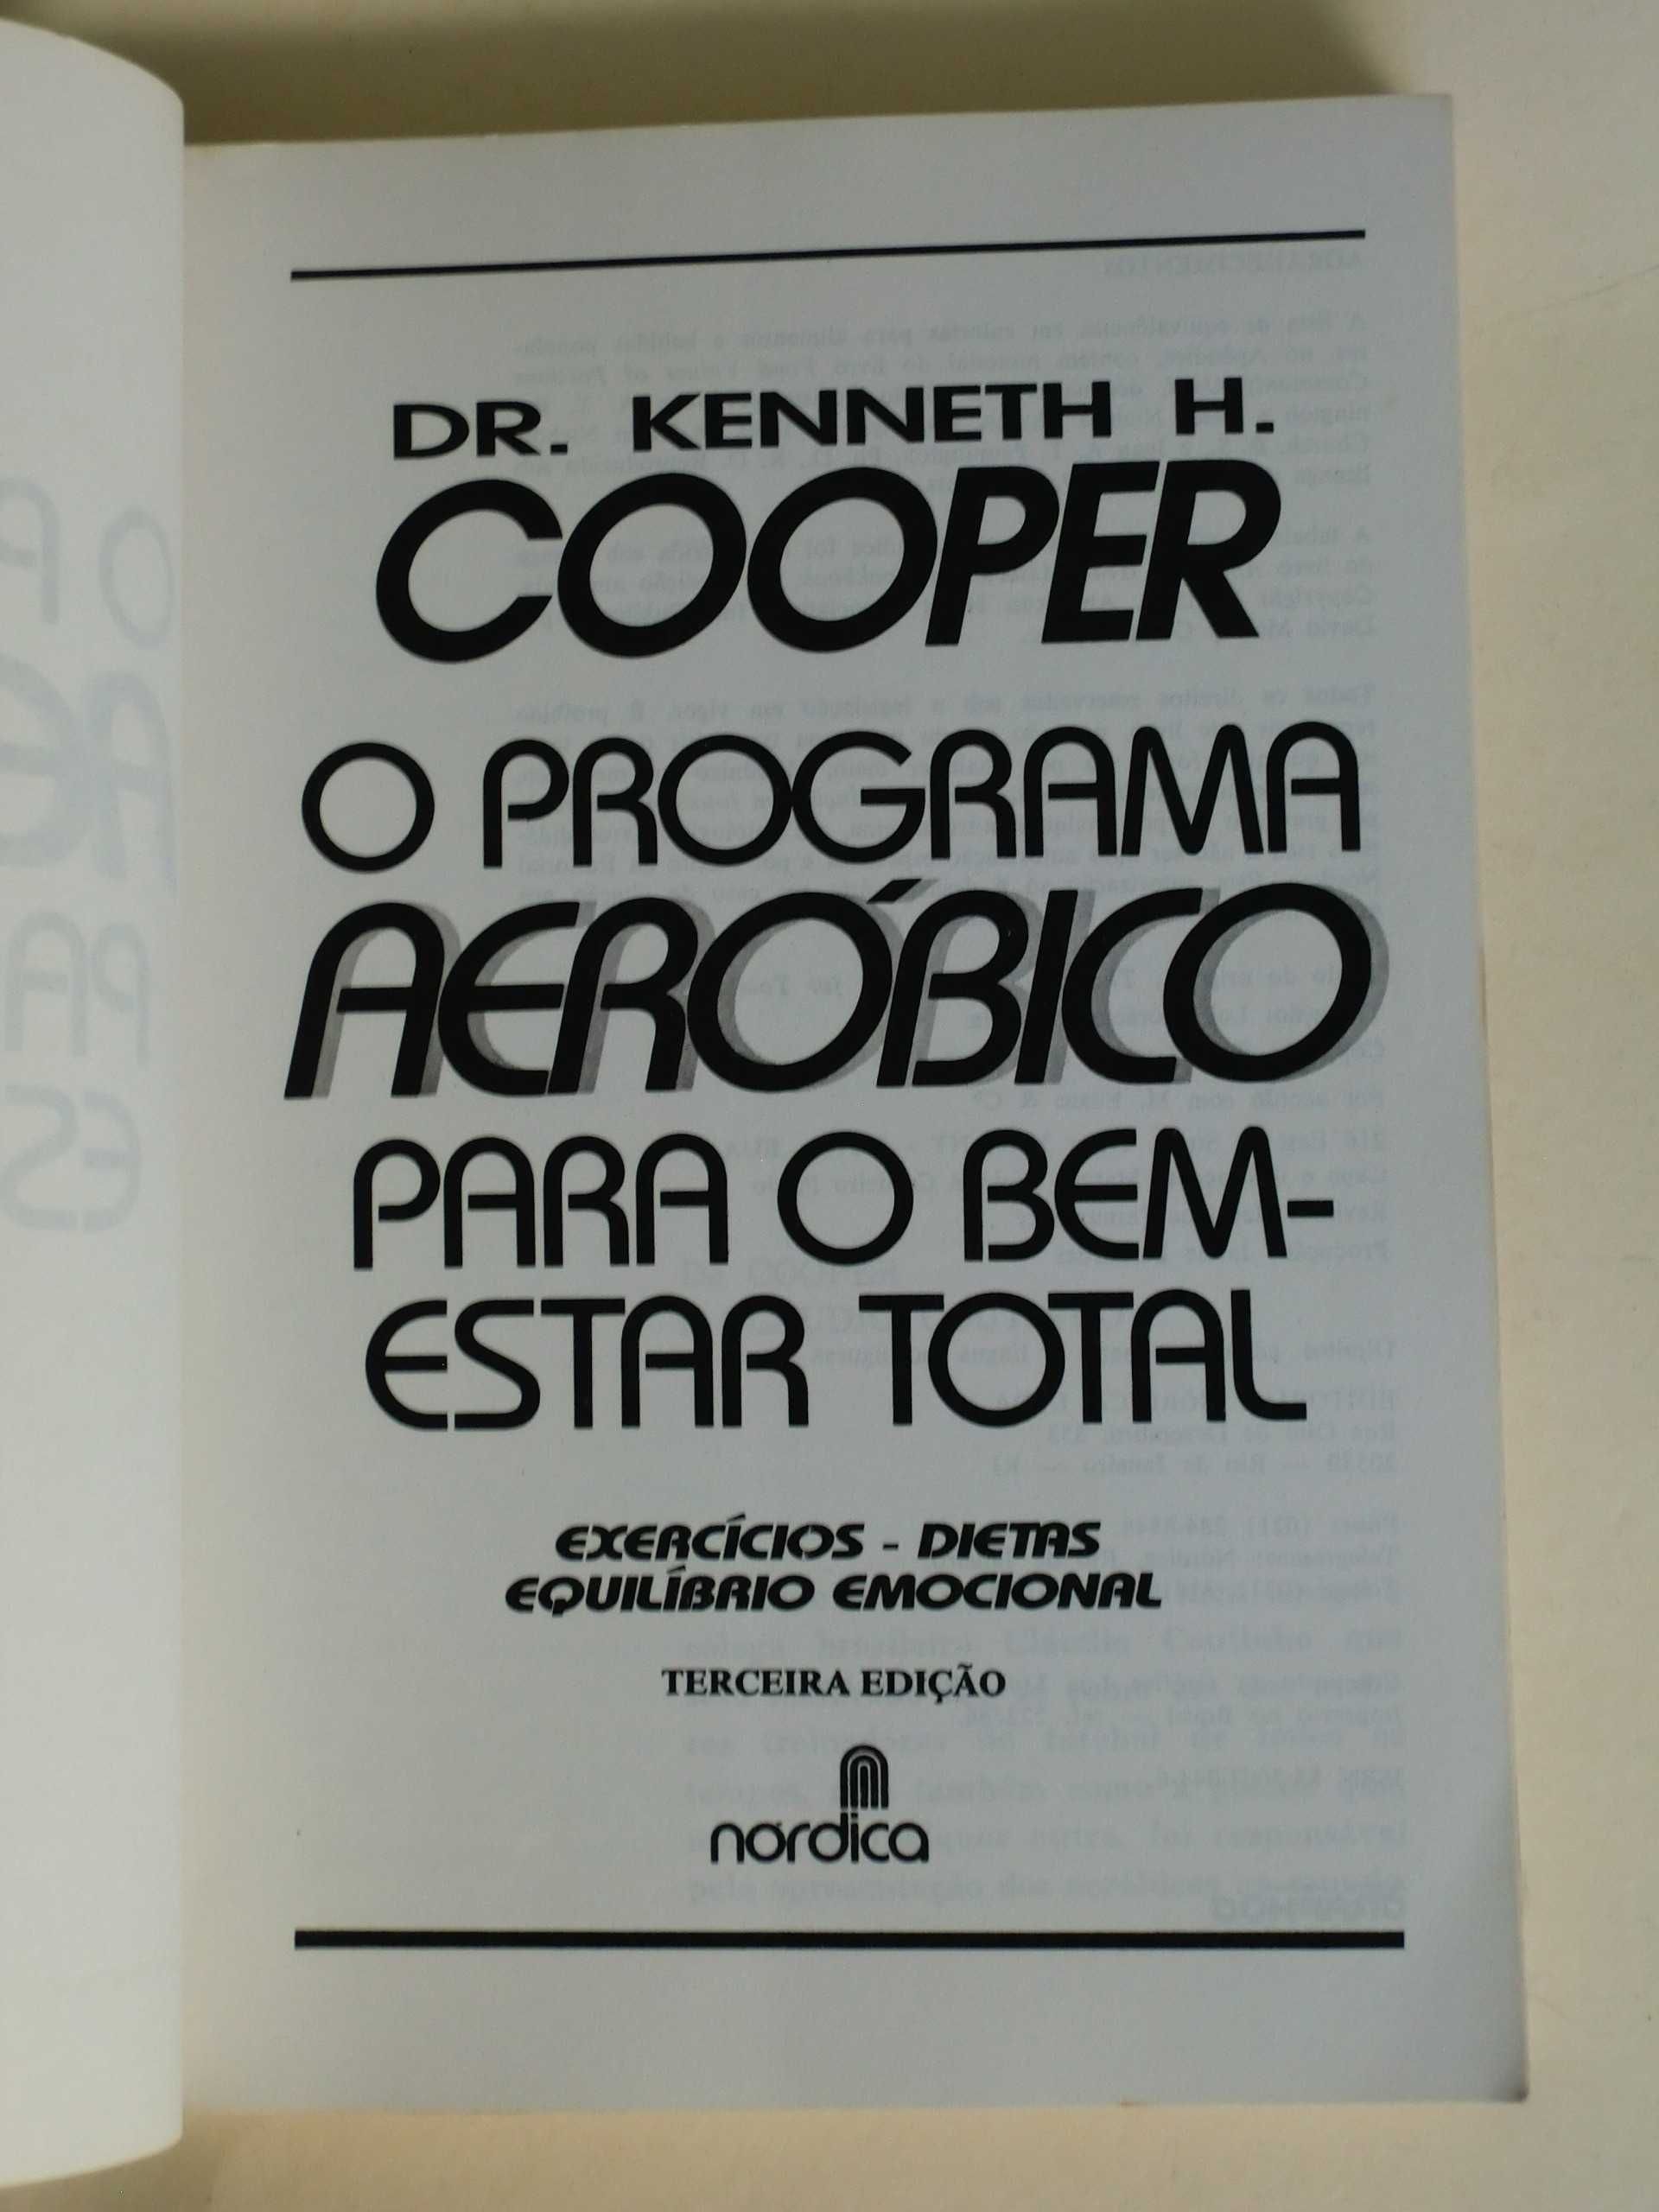 O Programa Aeróbico para o bem-estar geral
do Dr. Kenneth H. Cooper